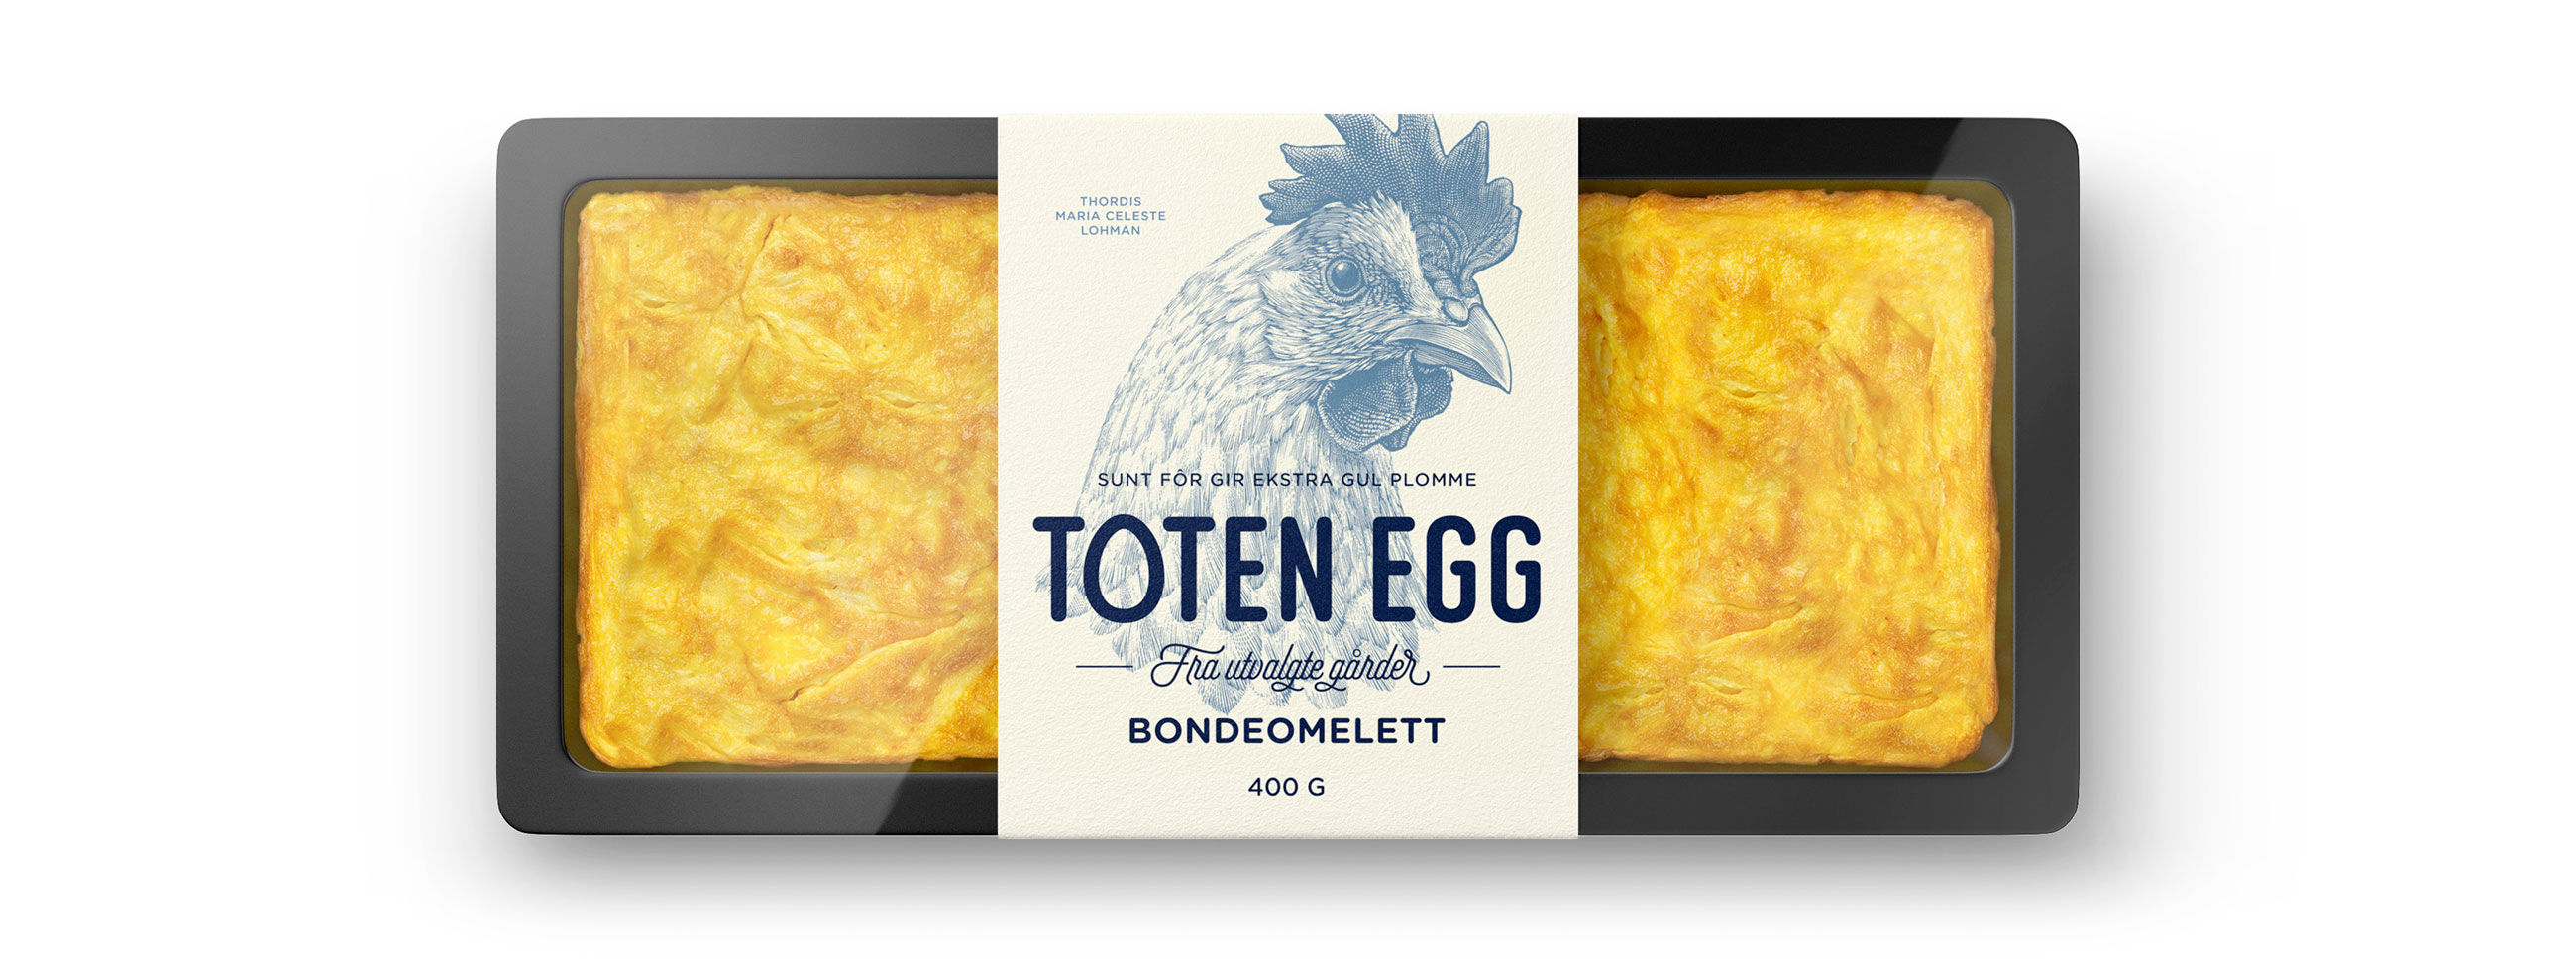 Toten egg bondeomelett omelette. Emballasje packaging design.